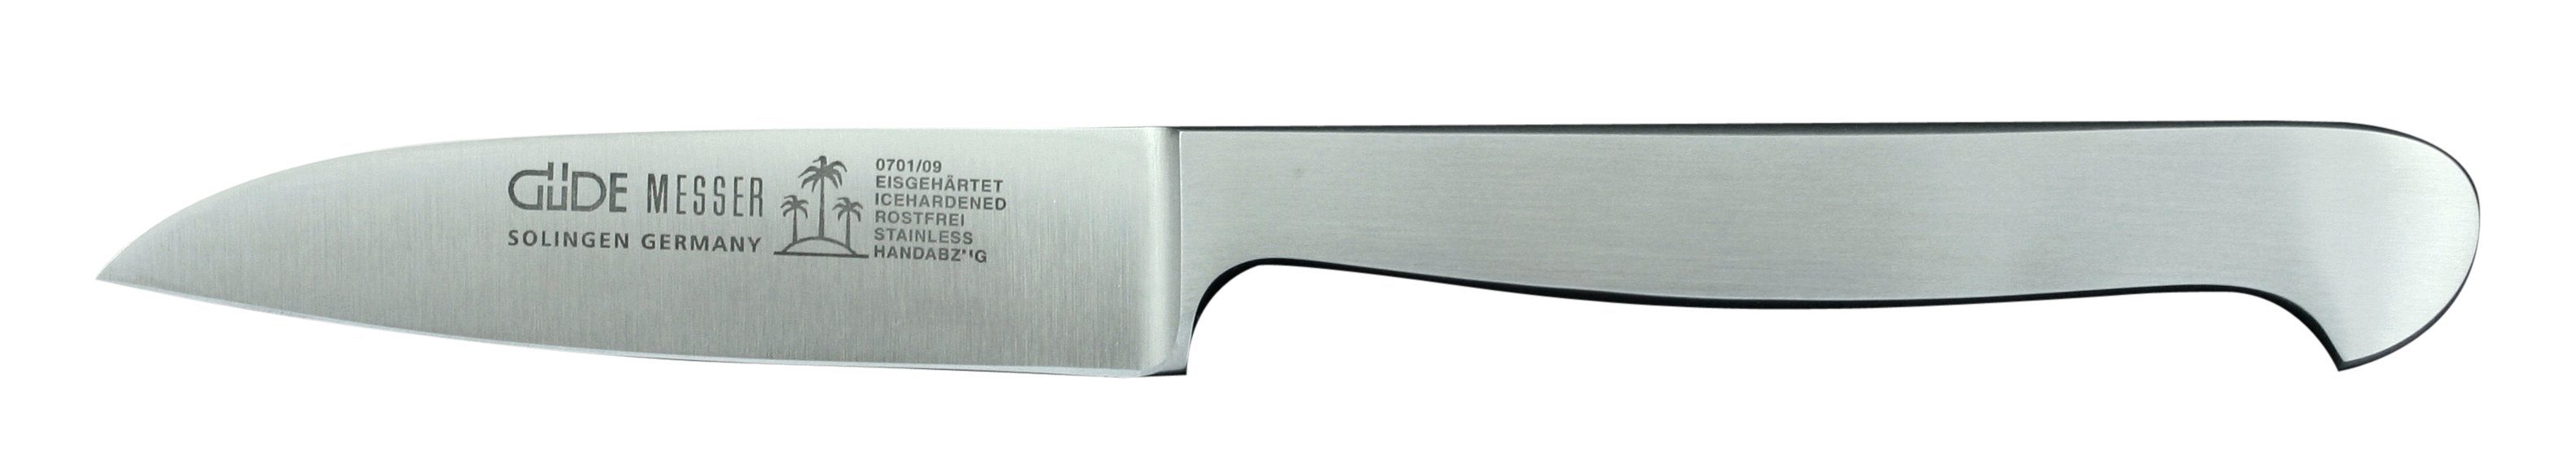 Güde Messer Solingen Gemüsemesser Kappa, Gemüsemesser 9 cm - Klinge und Griff CVM-Stahl